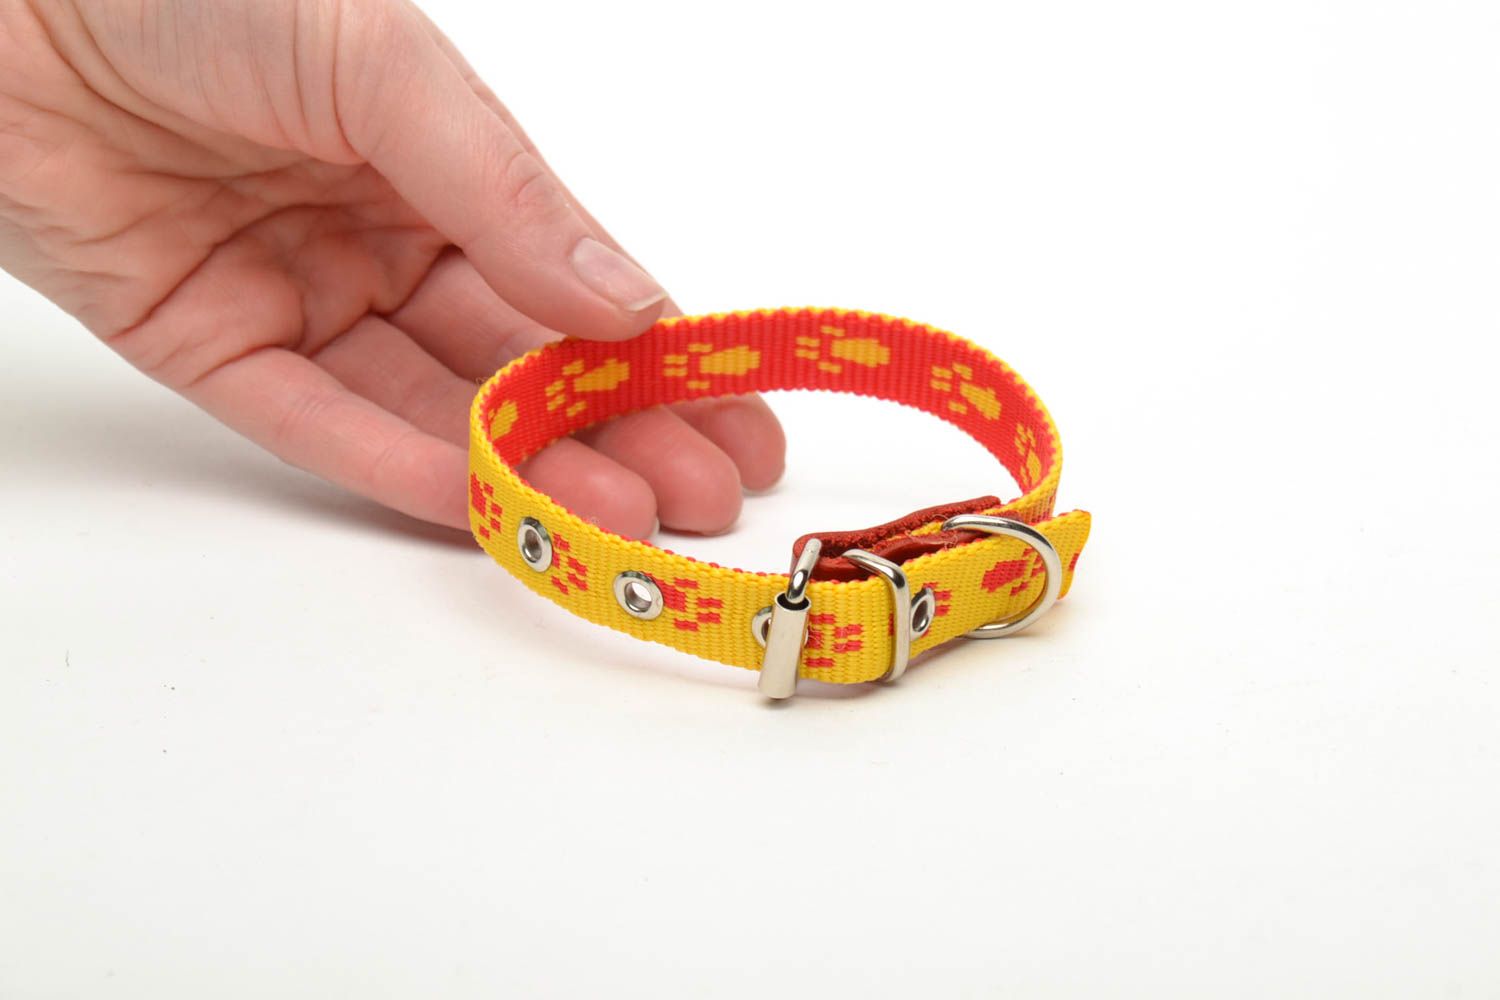 Textil Halsband für Hund in Gelb foto 5